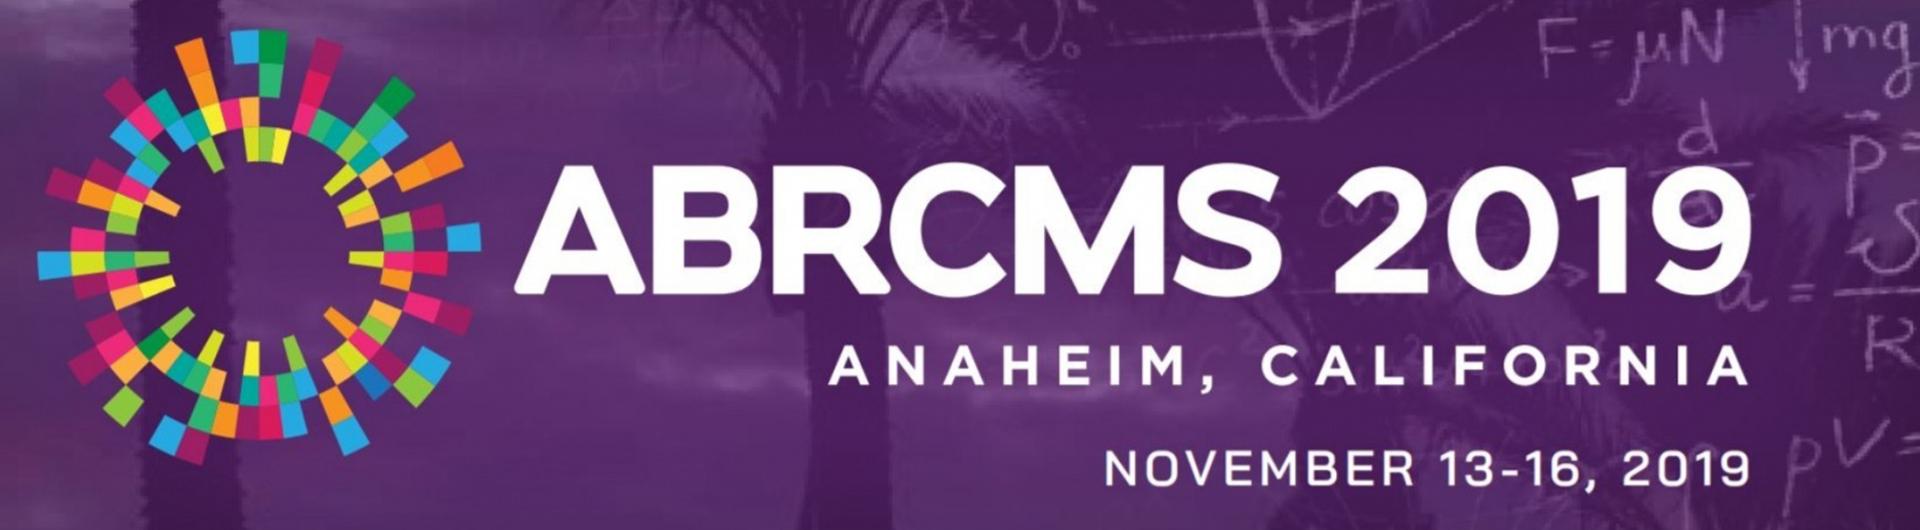 ABRCMS 2019 - Anaheim, California - November 13-16